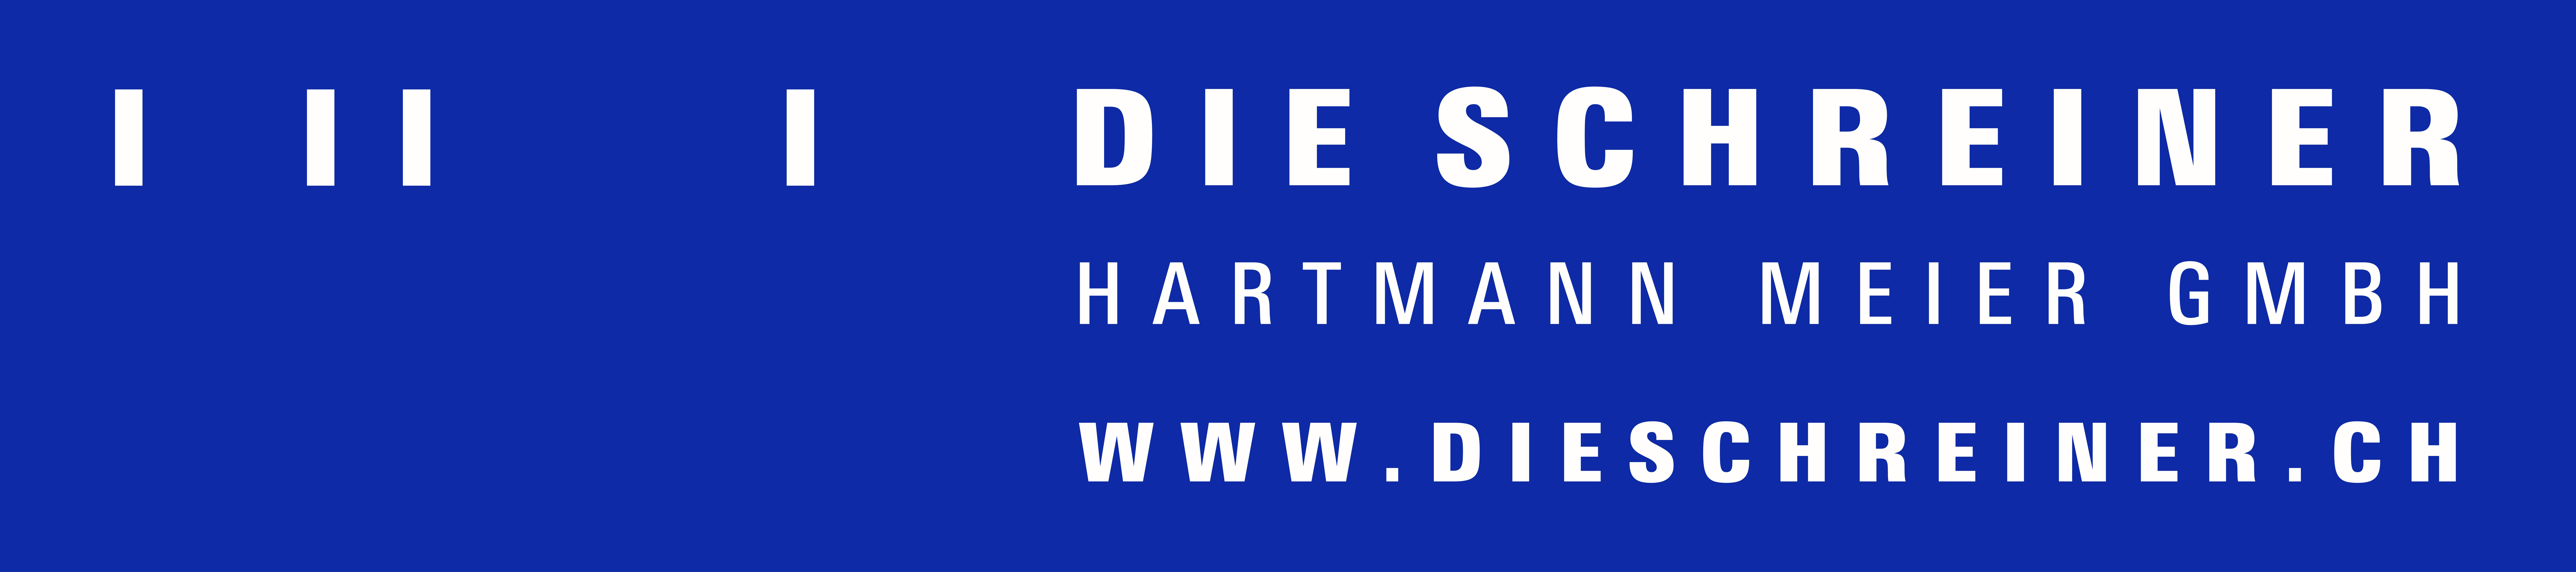 Die Schreiner Hartmann Meier GmbH